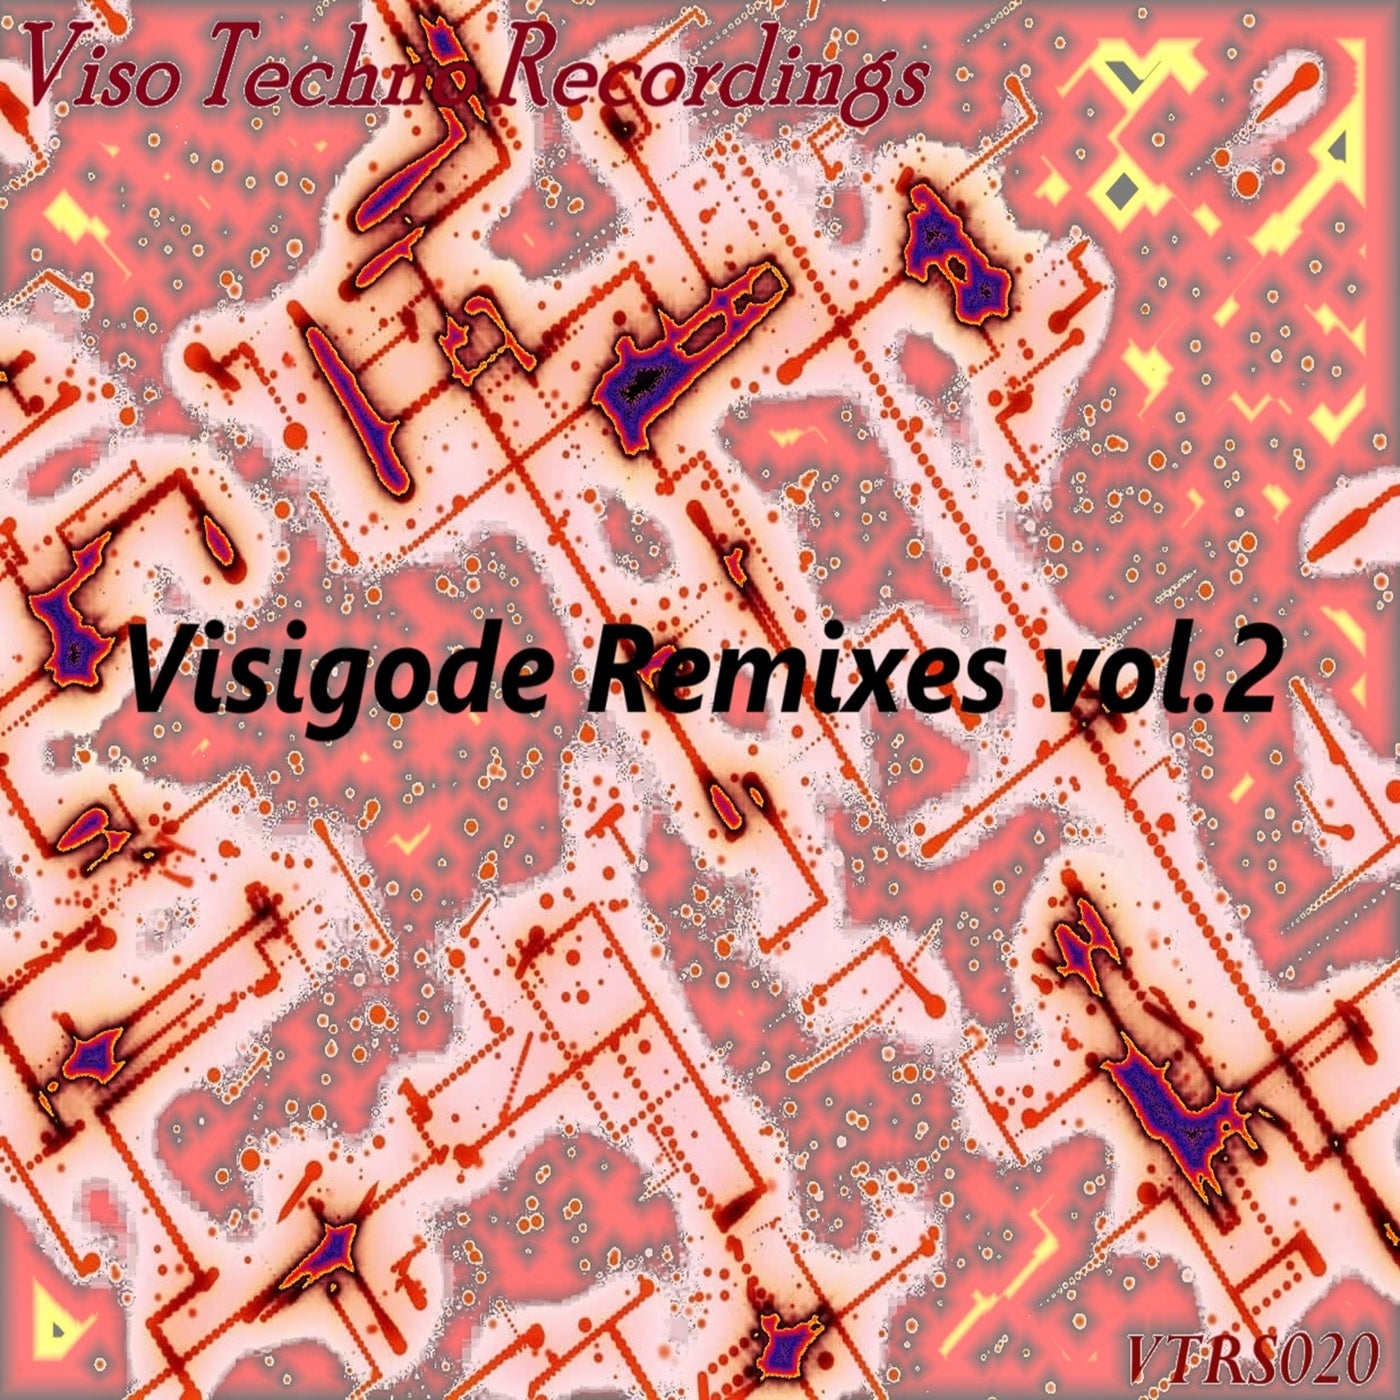 Visigode, Vol. 2 (Remixes)